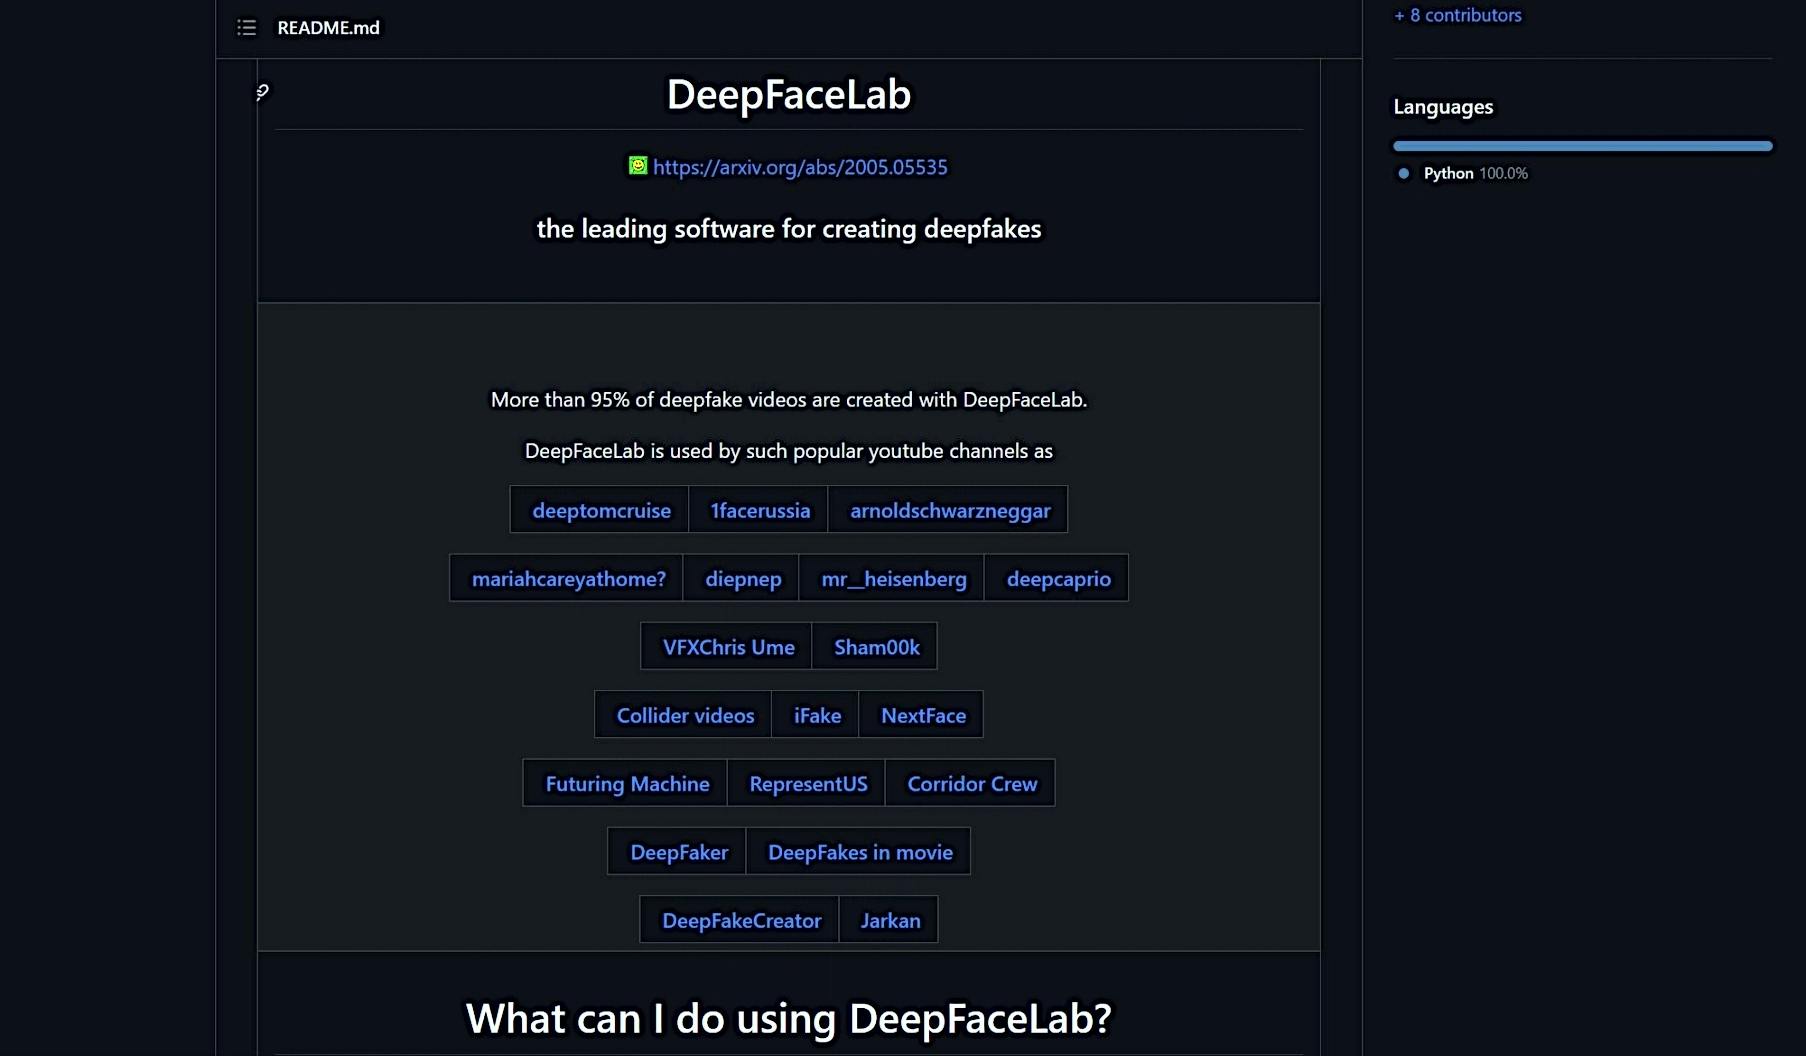 DeepFaceLab featured